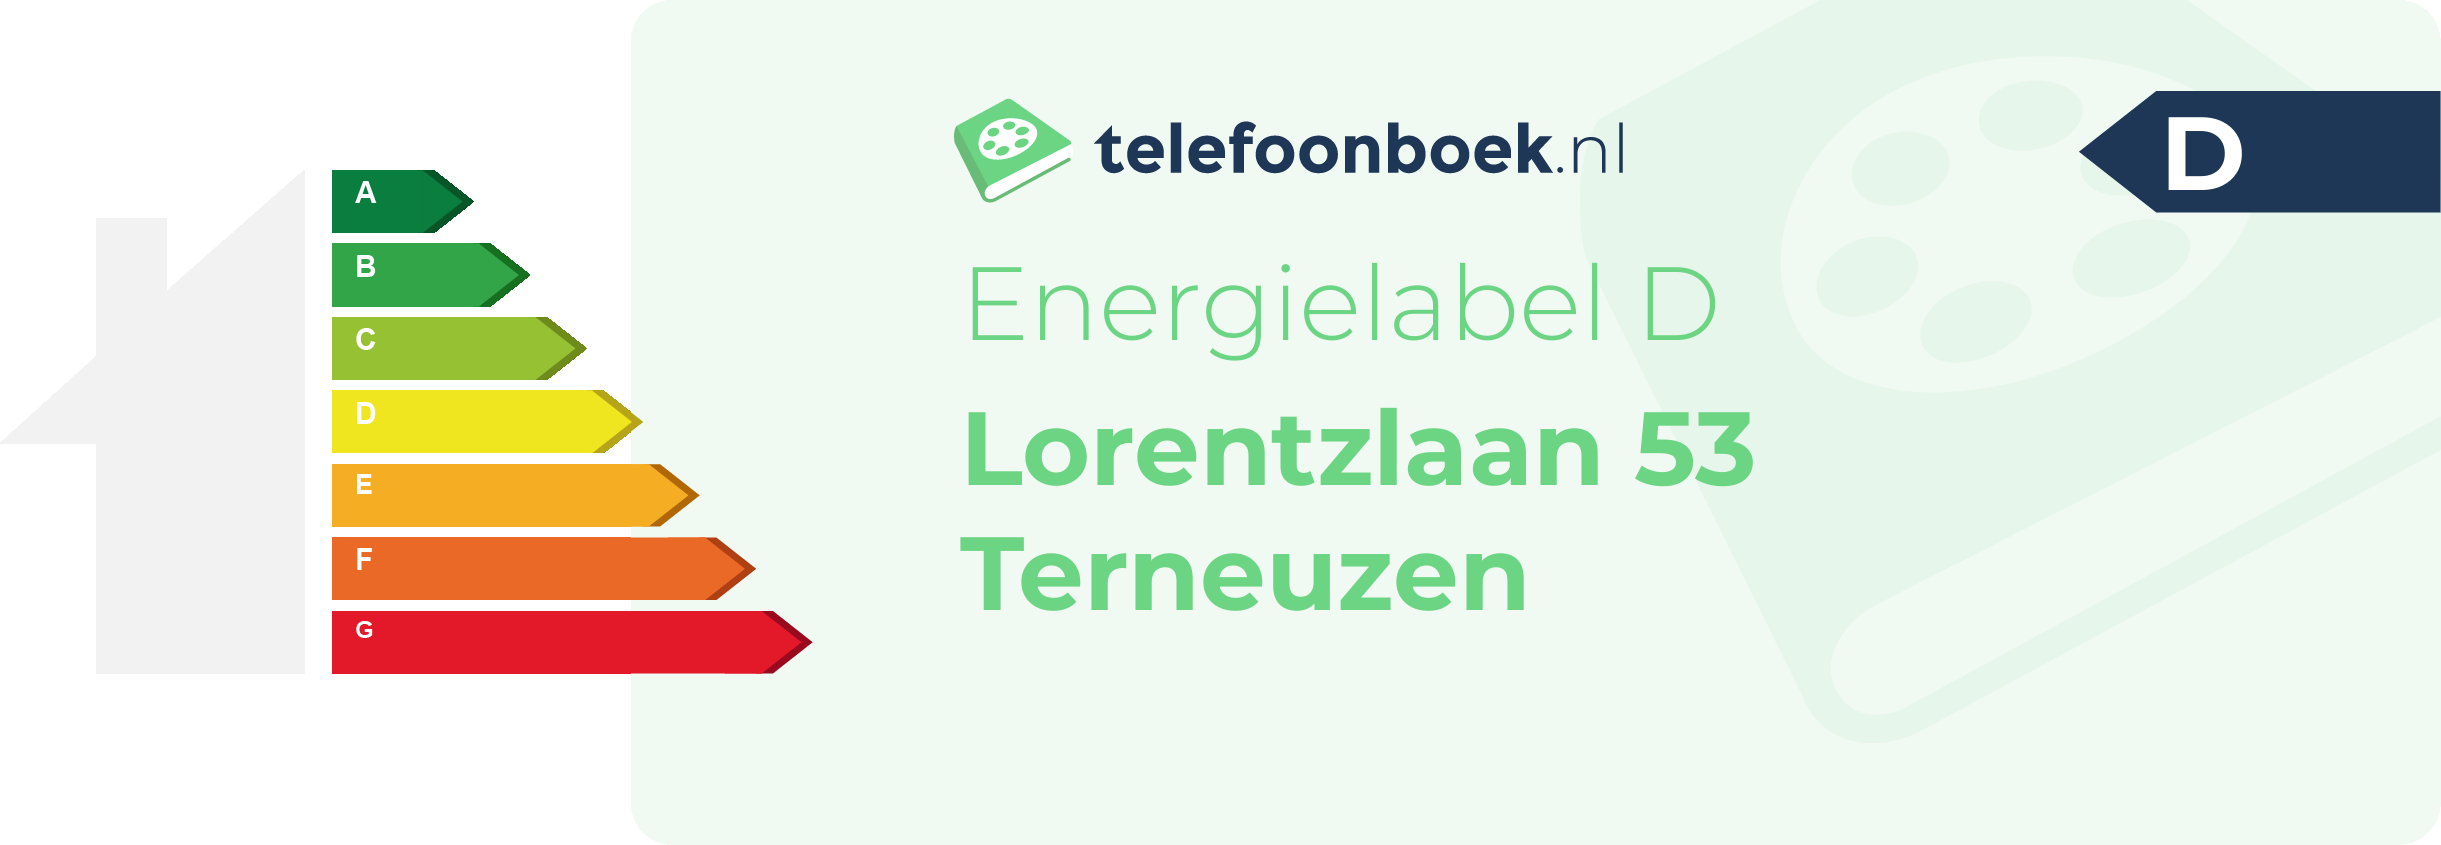 Energielabel Lorentzlaan 53 Terneuzen